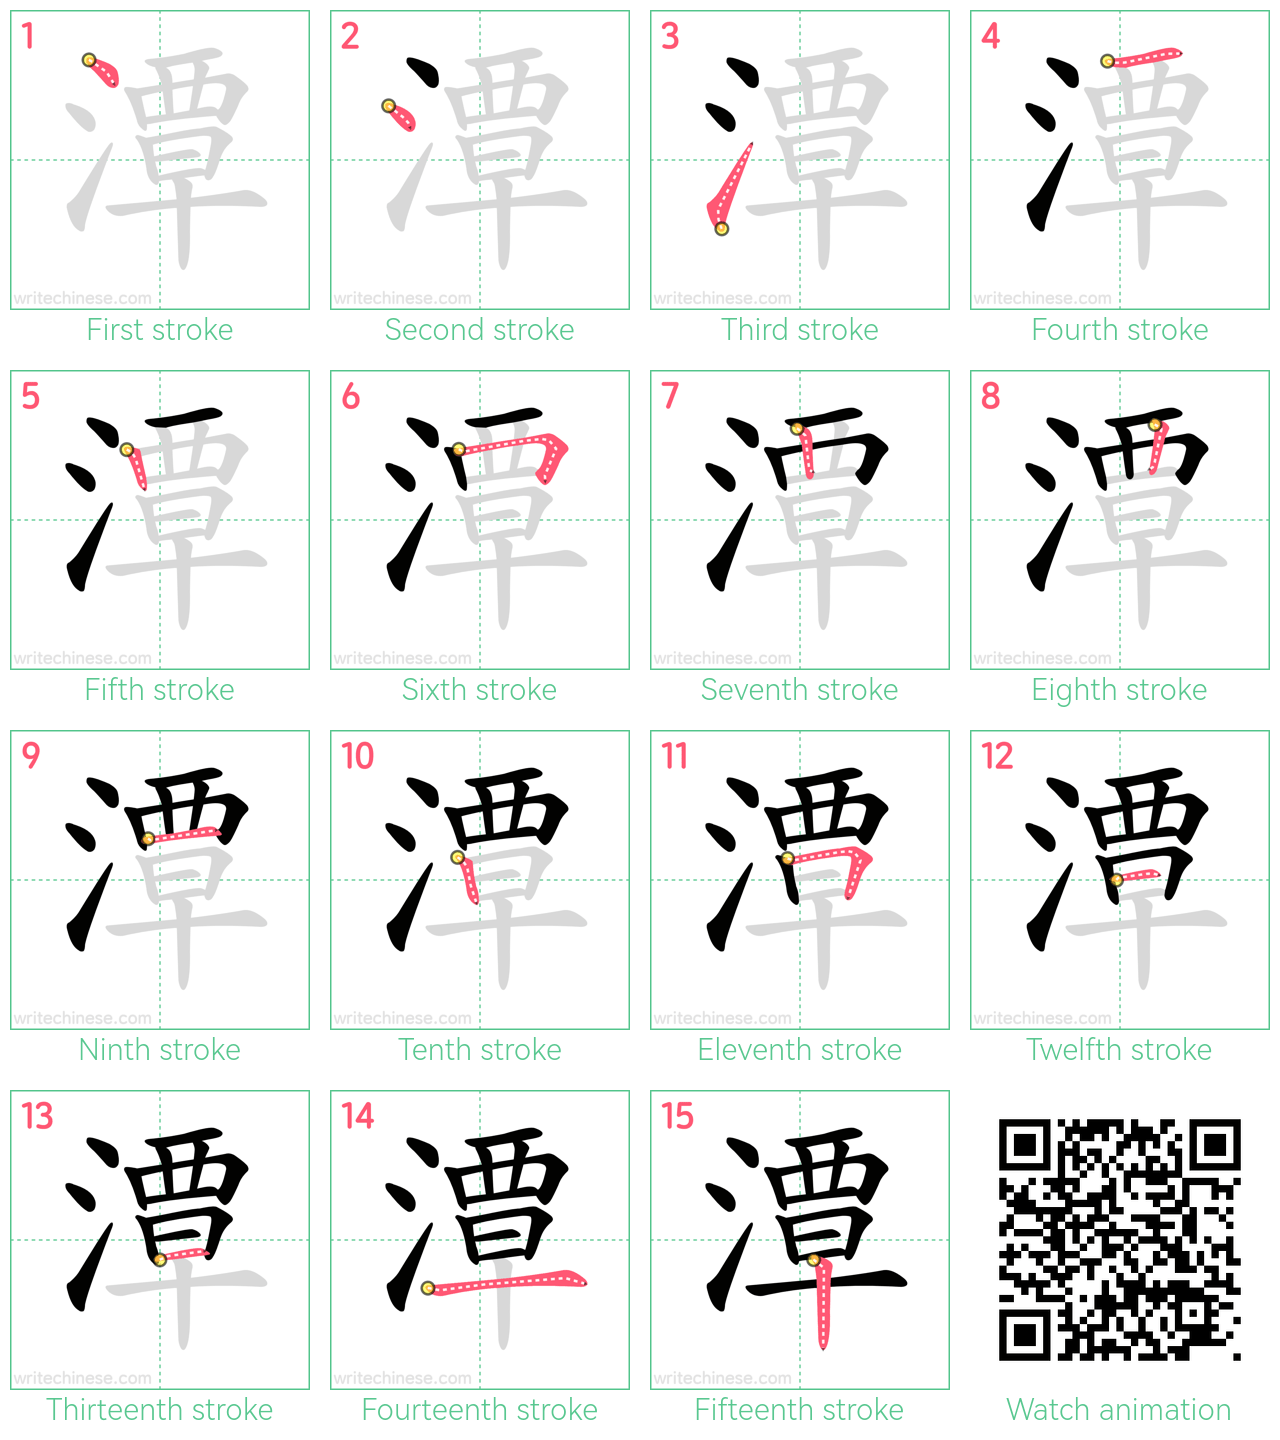 潭 step-by-step stroke order diagrams